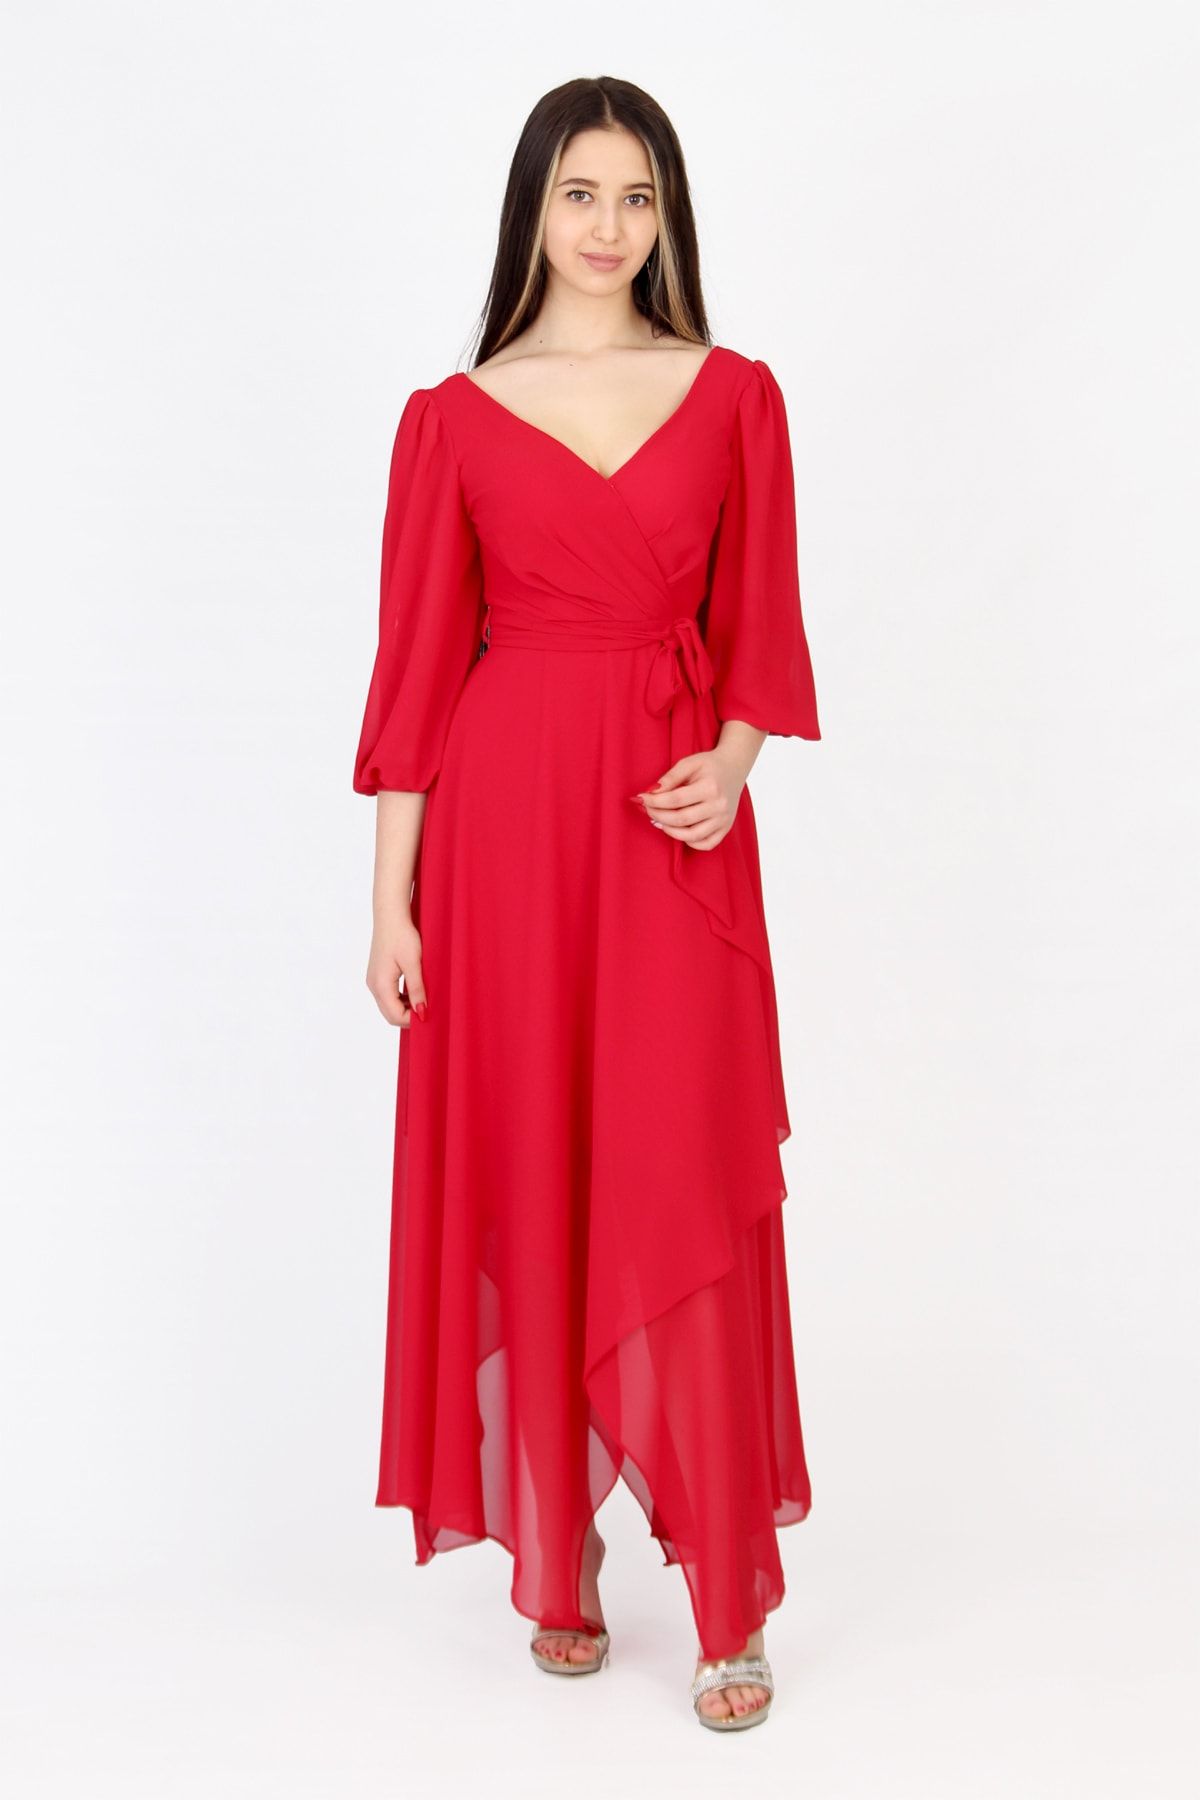 ZEROPOINT Kadın Kırmızı Şifon Elbise